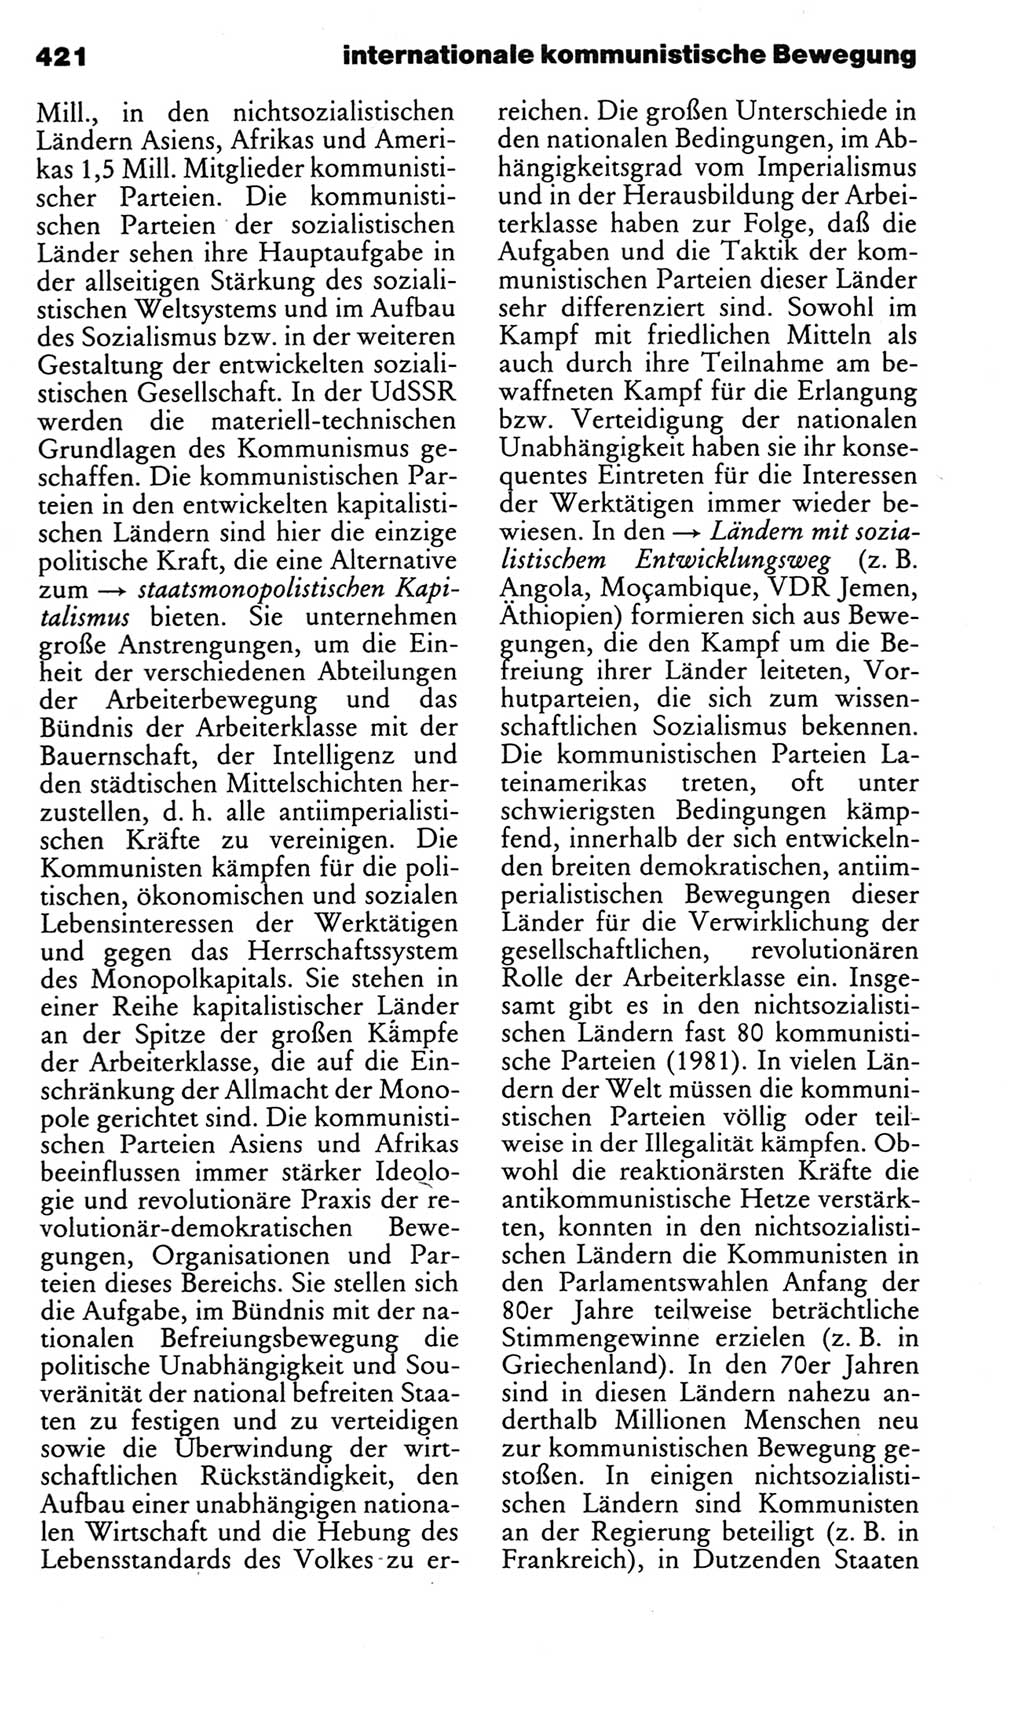 Kleines politisches Wörterbuch [Deutsche Demokratische Republik (DDR)] 1983, Seite 421 (Kl. pol. Wb. DDR 1983, S. 421)